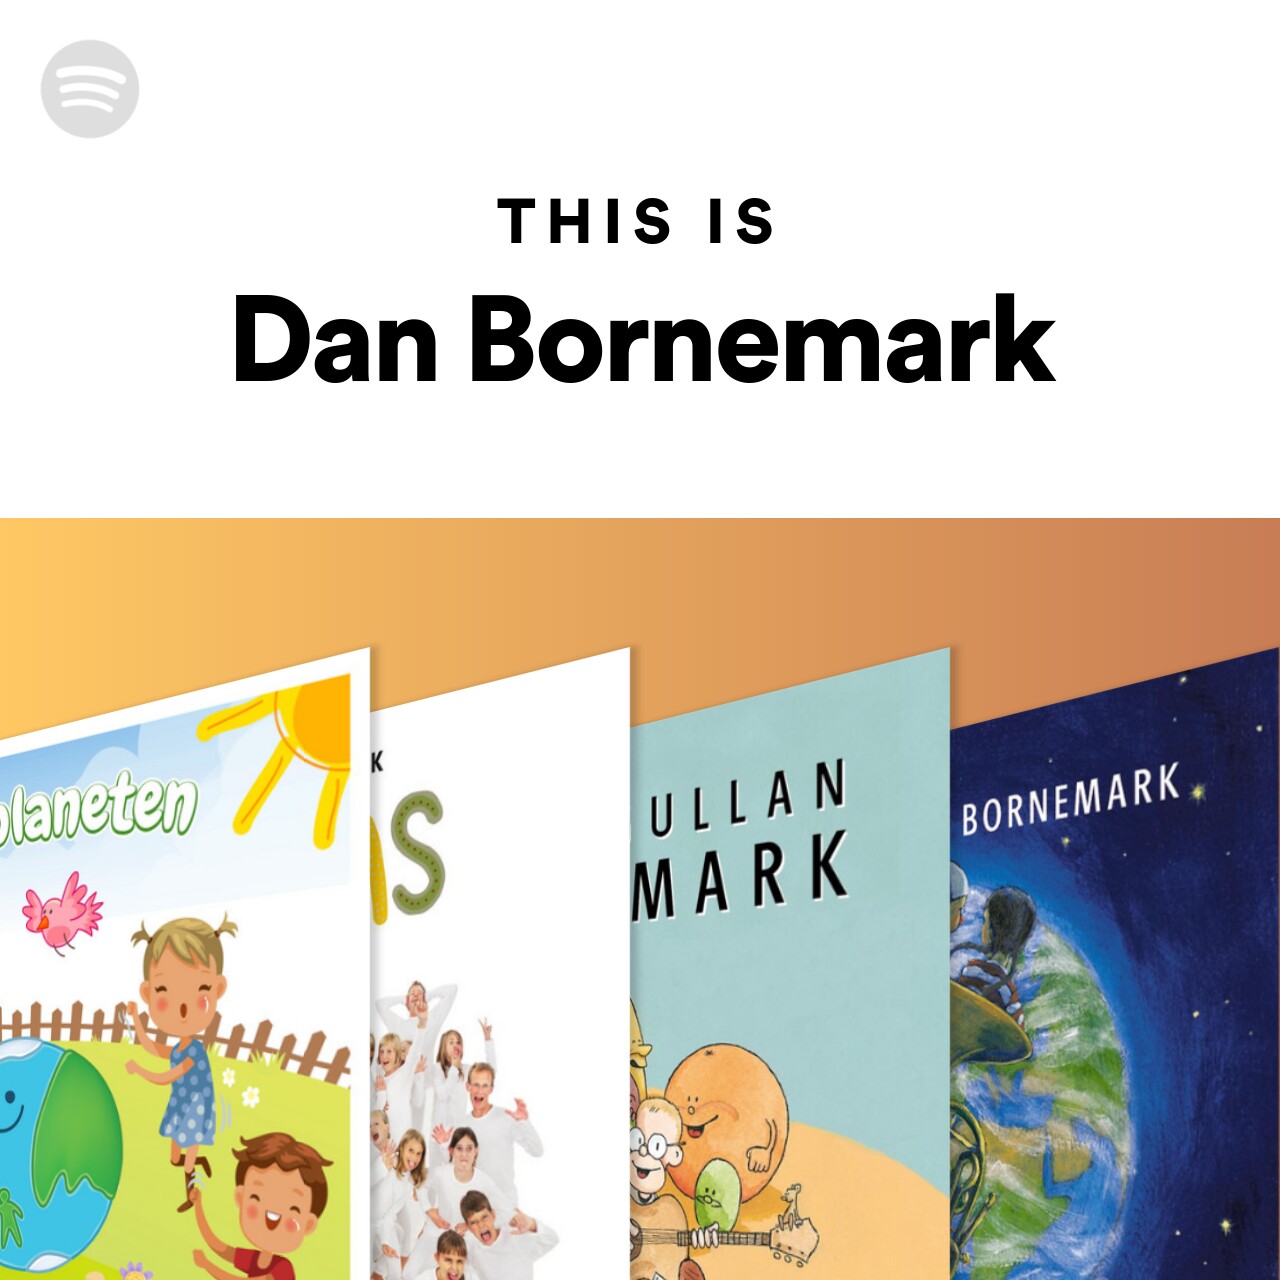 This Is Dan Bornemark